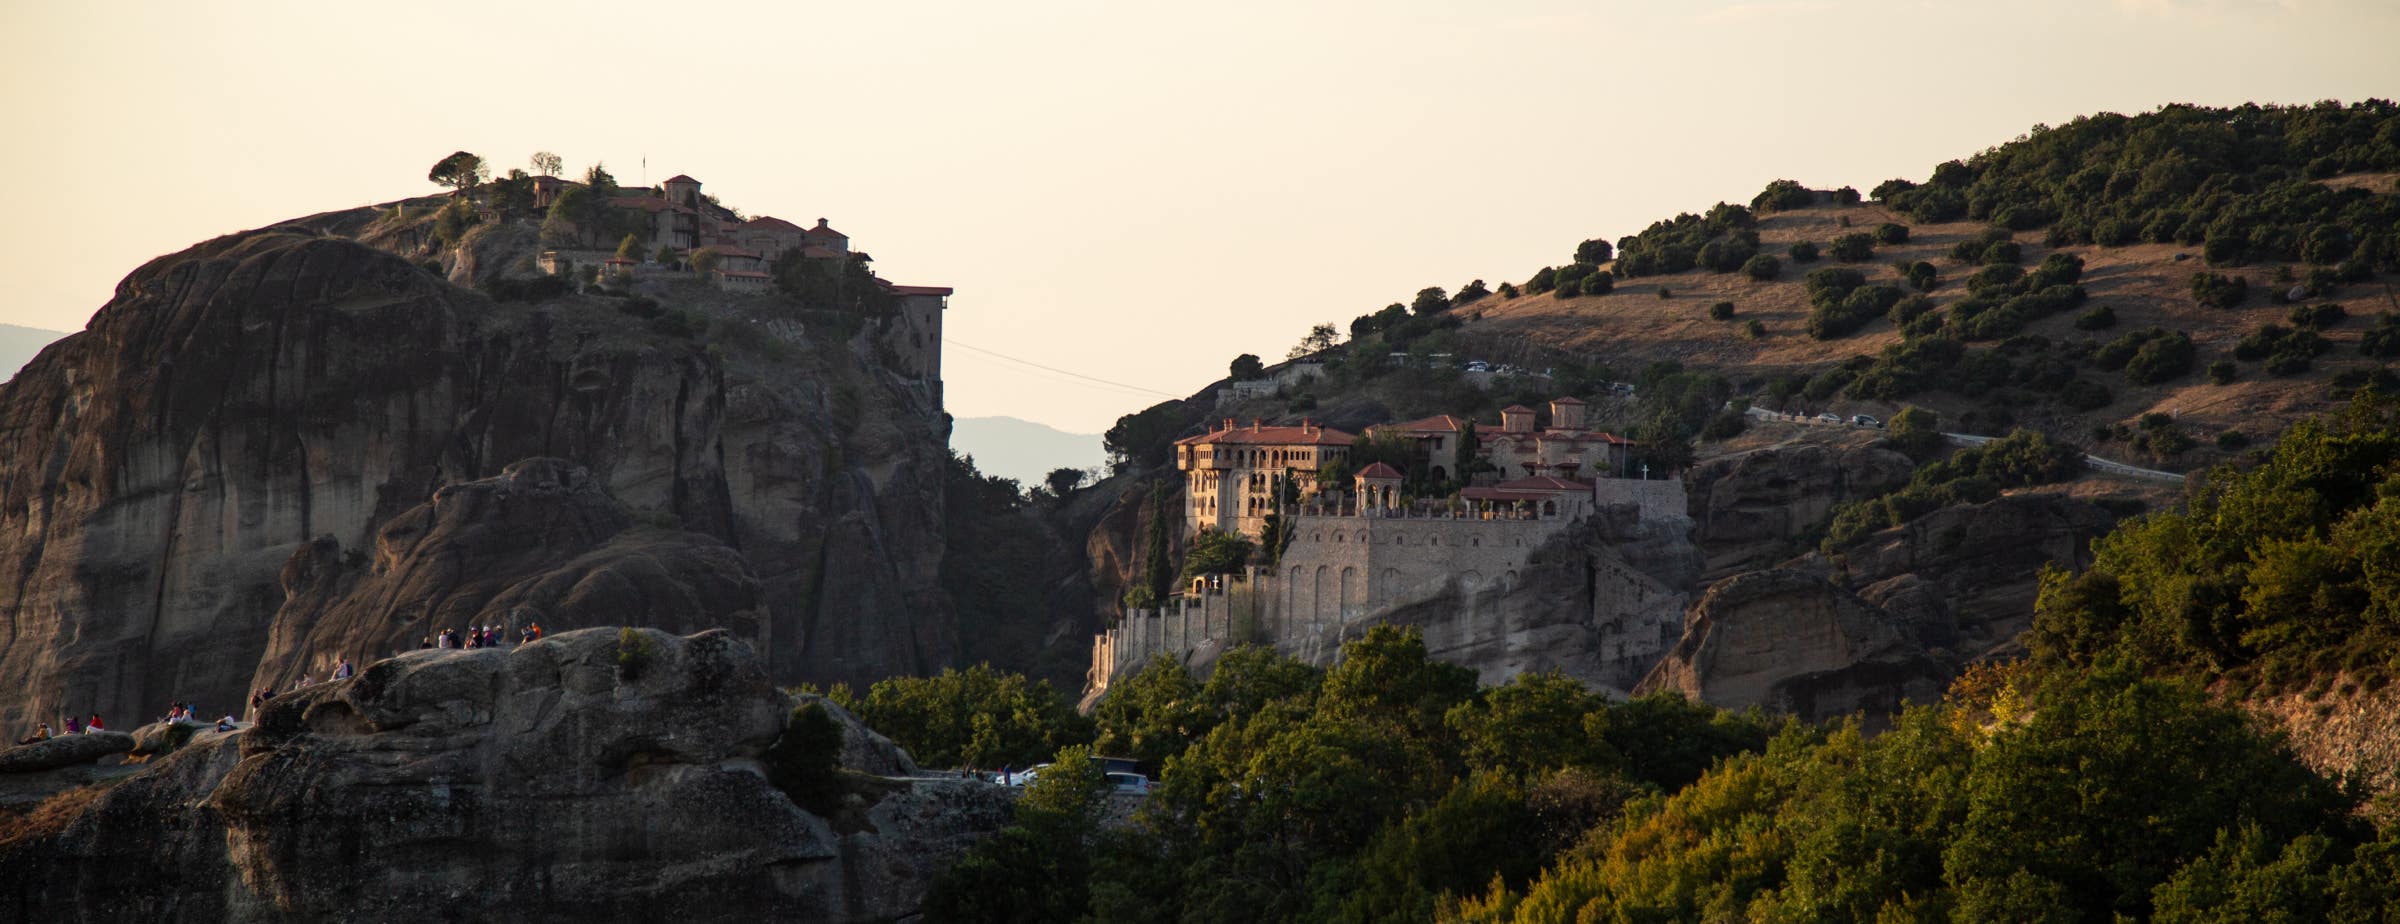 Slika prikazuje pogled na stijene i dva samostana Meteora. Lijevi samostan nalazi se na vrhu stijene, a desni samostan je izgrađen na stijenama na strani većeg brda.